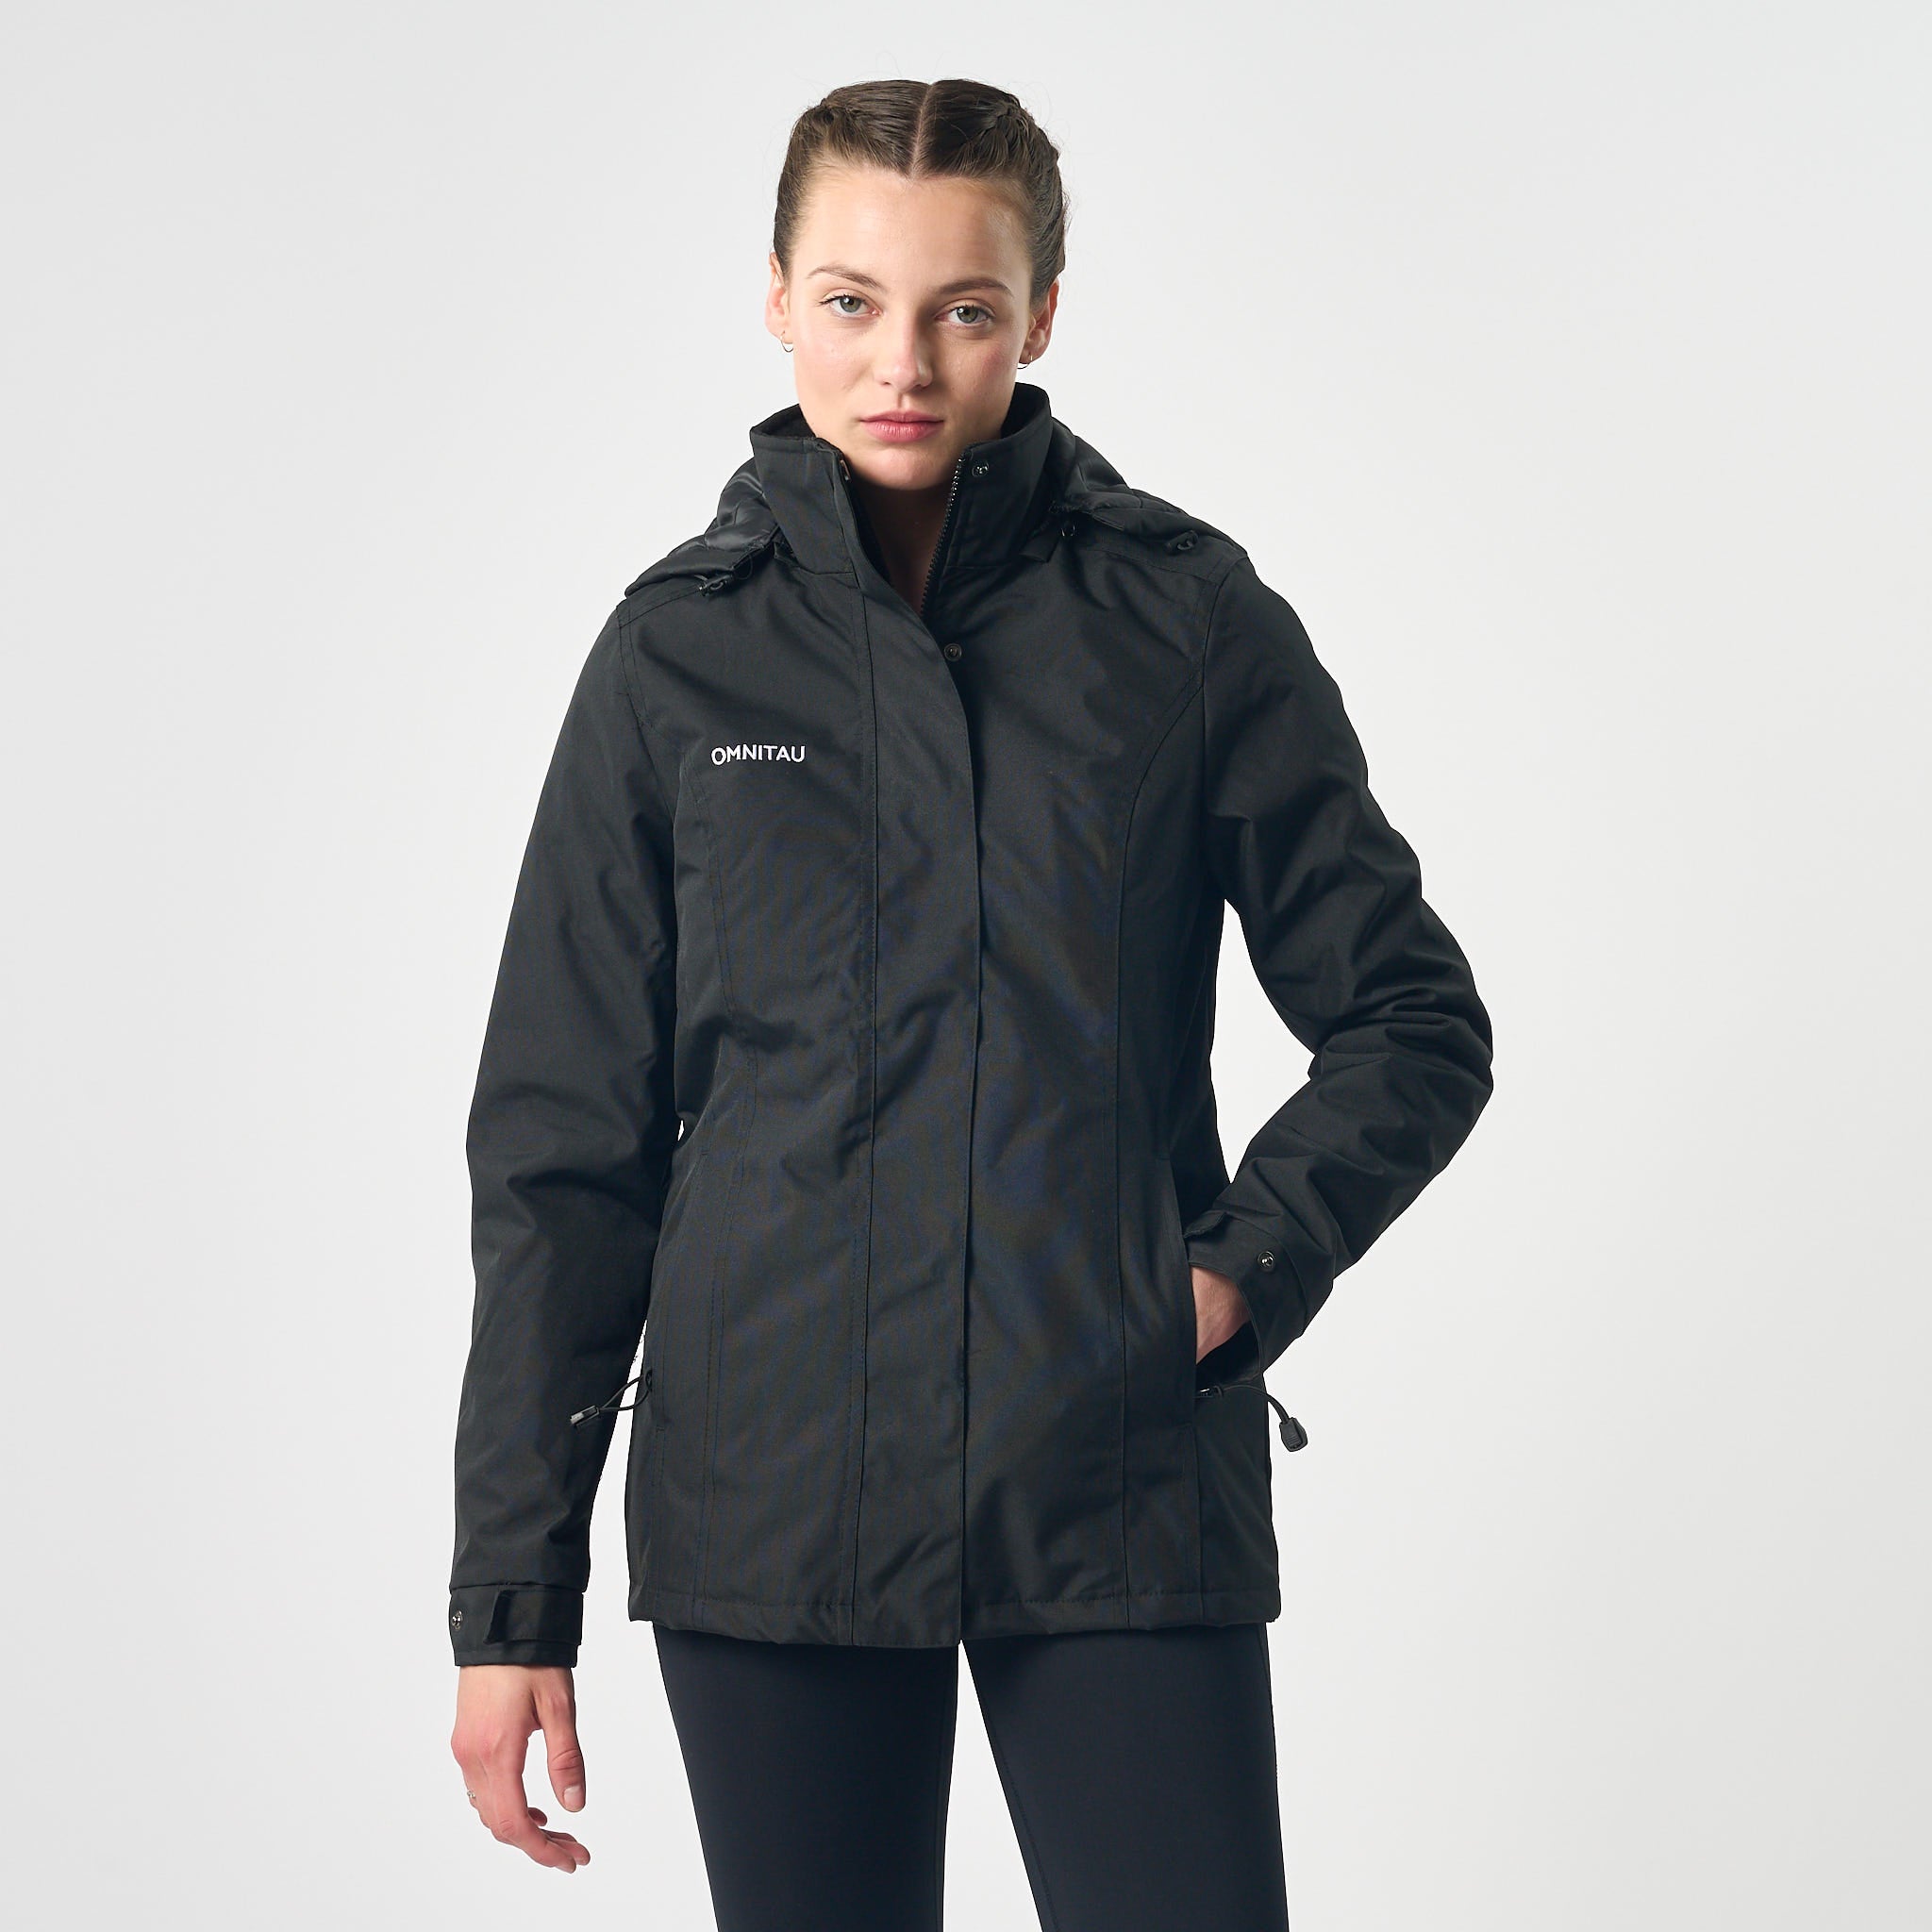 Omnitau Team Sports  Windproof Jackets – Omnitau Clothing Team Sports